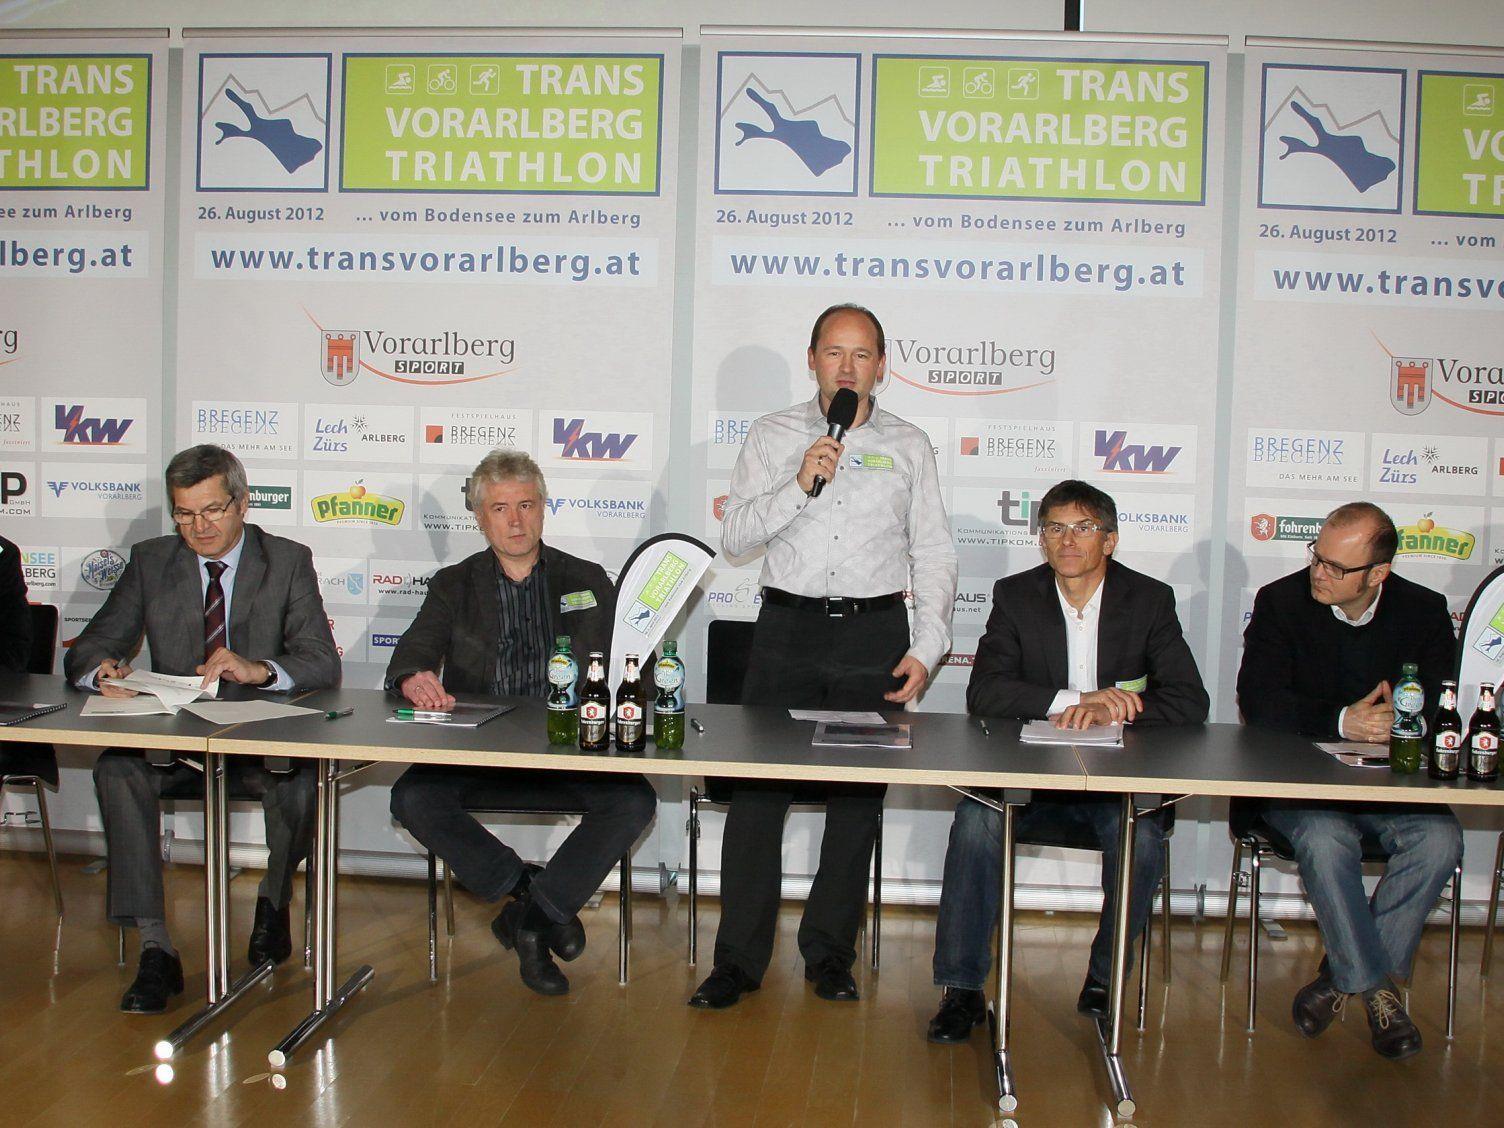 Trans Vorarlberg Triathlon wurde in Bregenz vorgestellt.